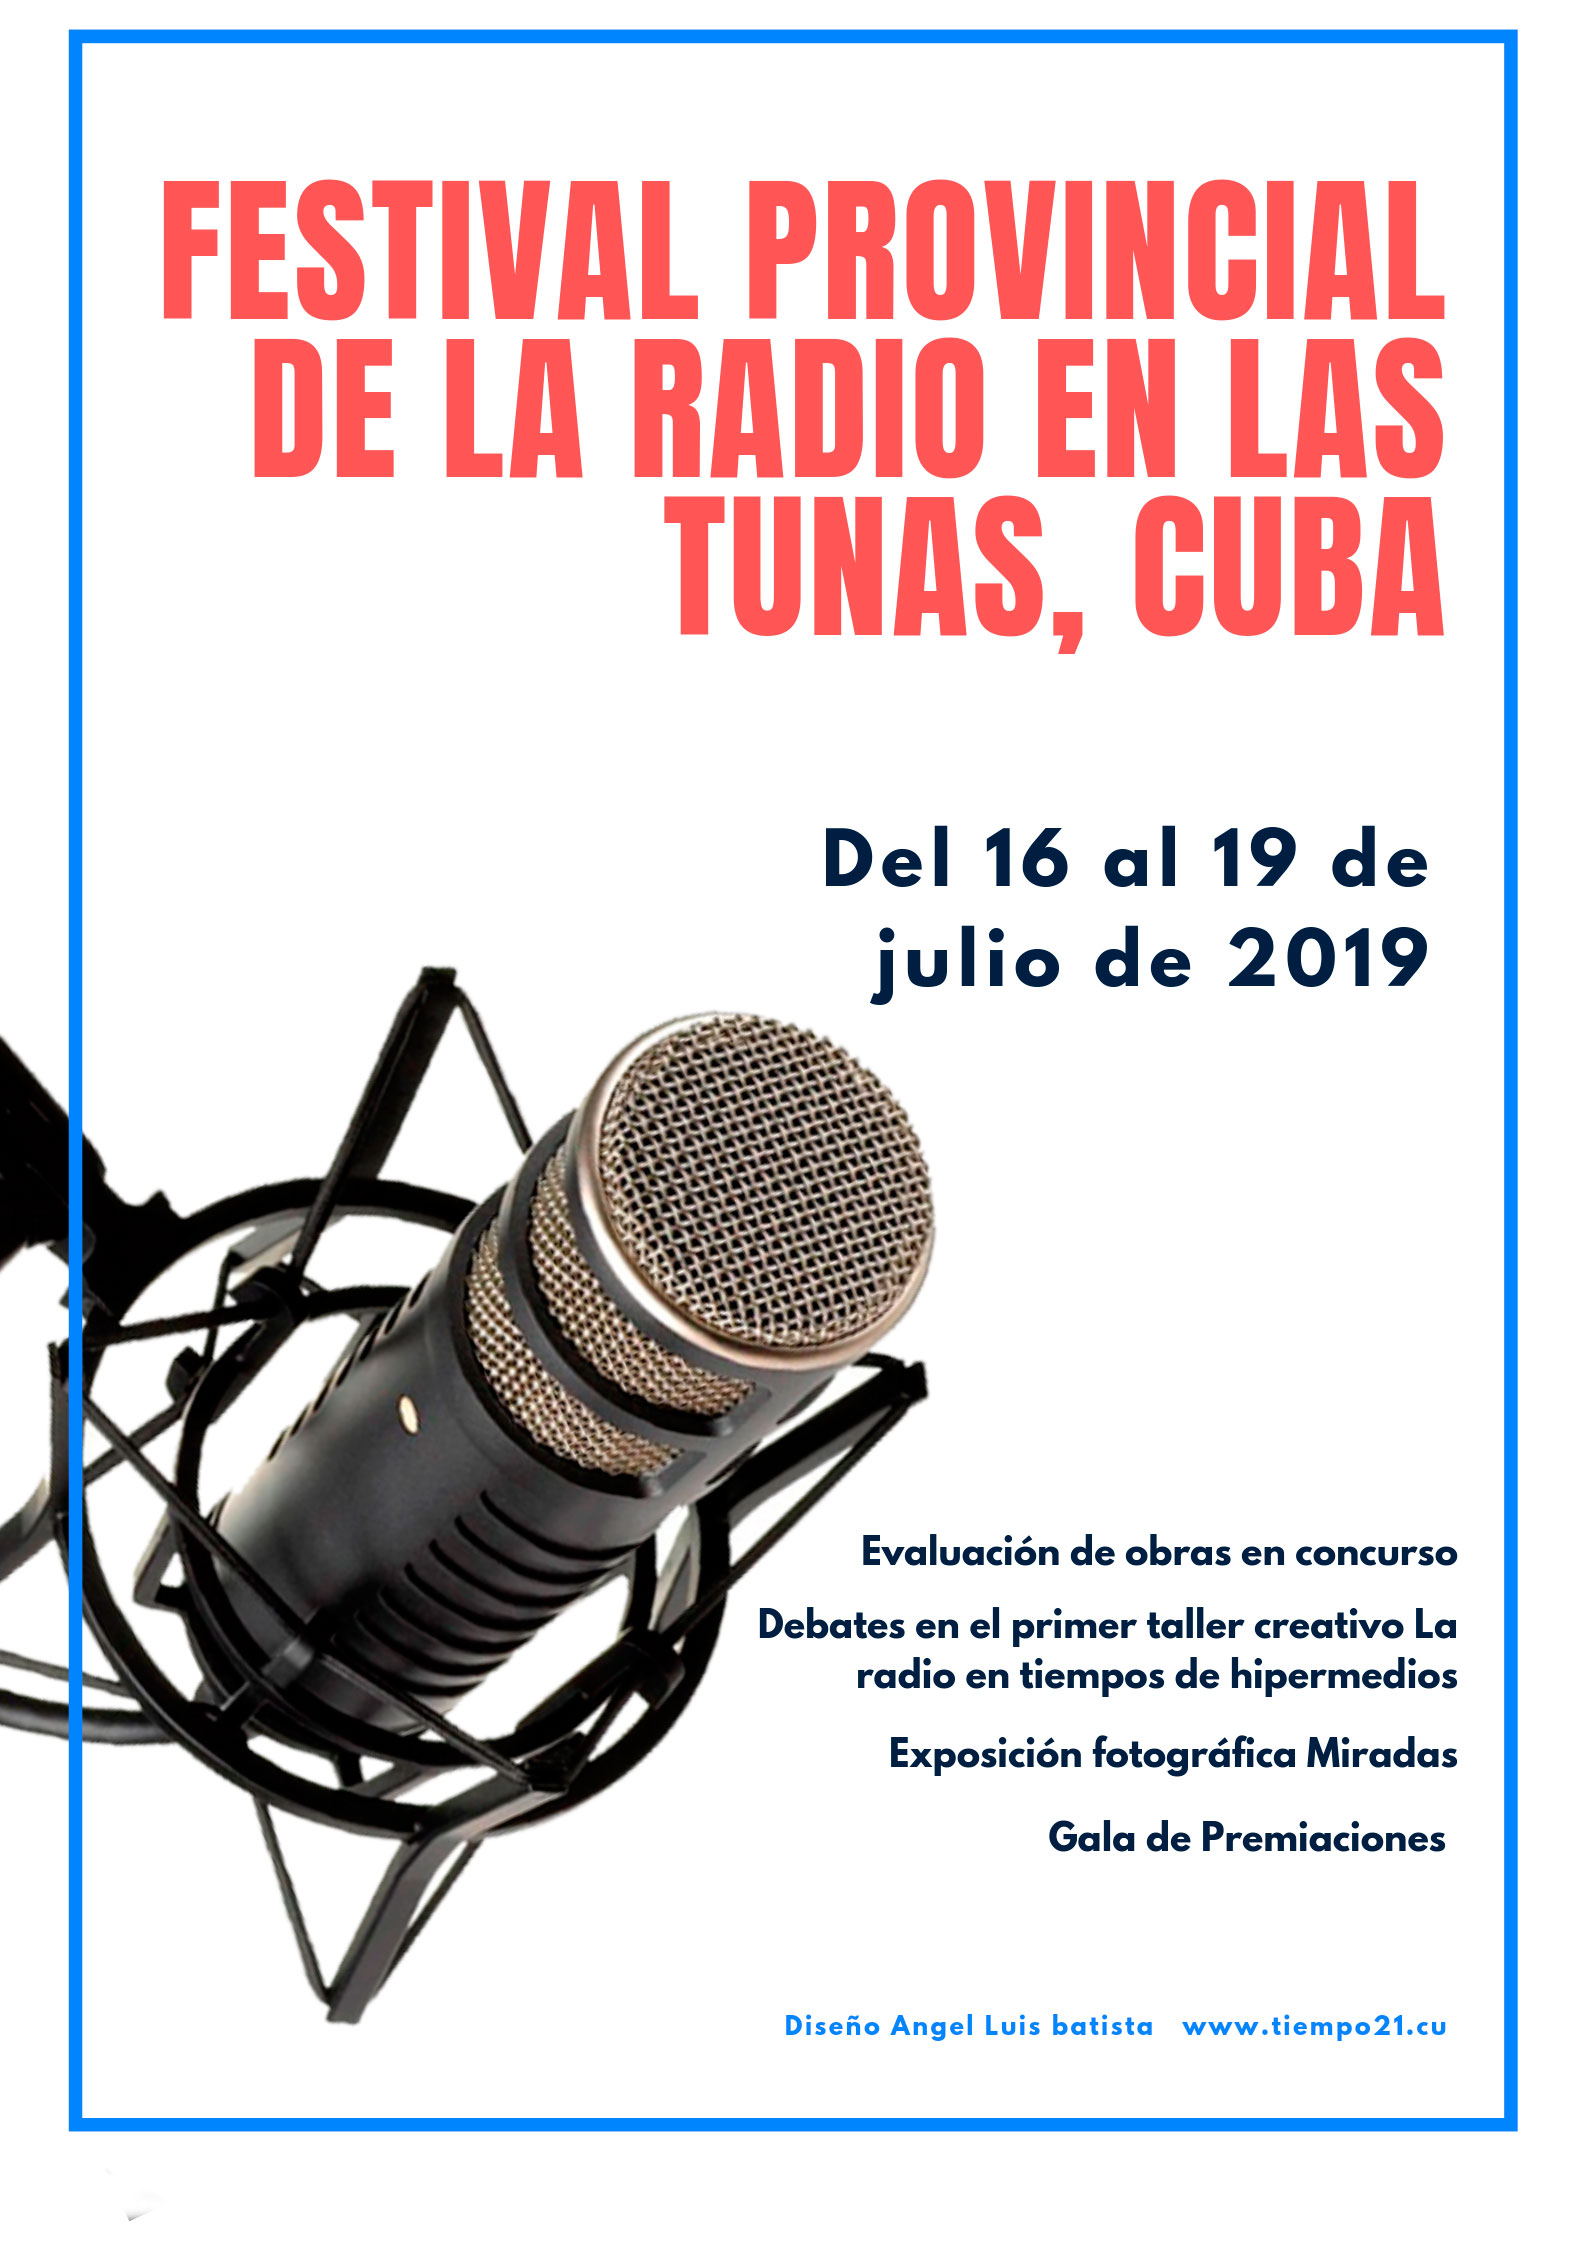 Radialistas de Las Tunas a las puertas del Festival Provincial 2019